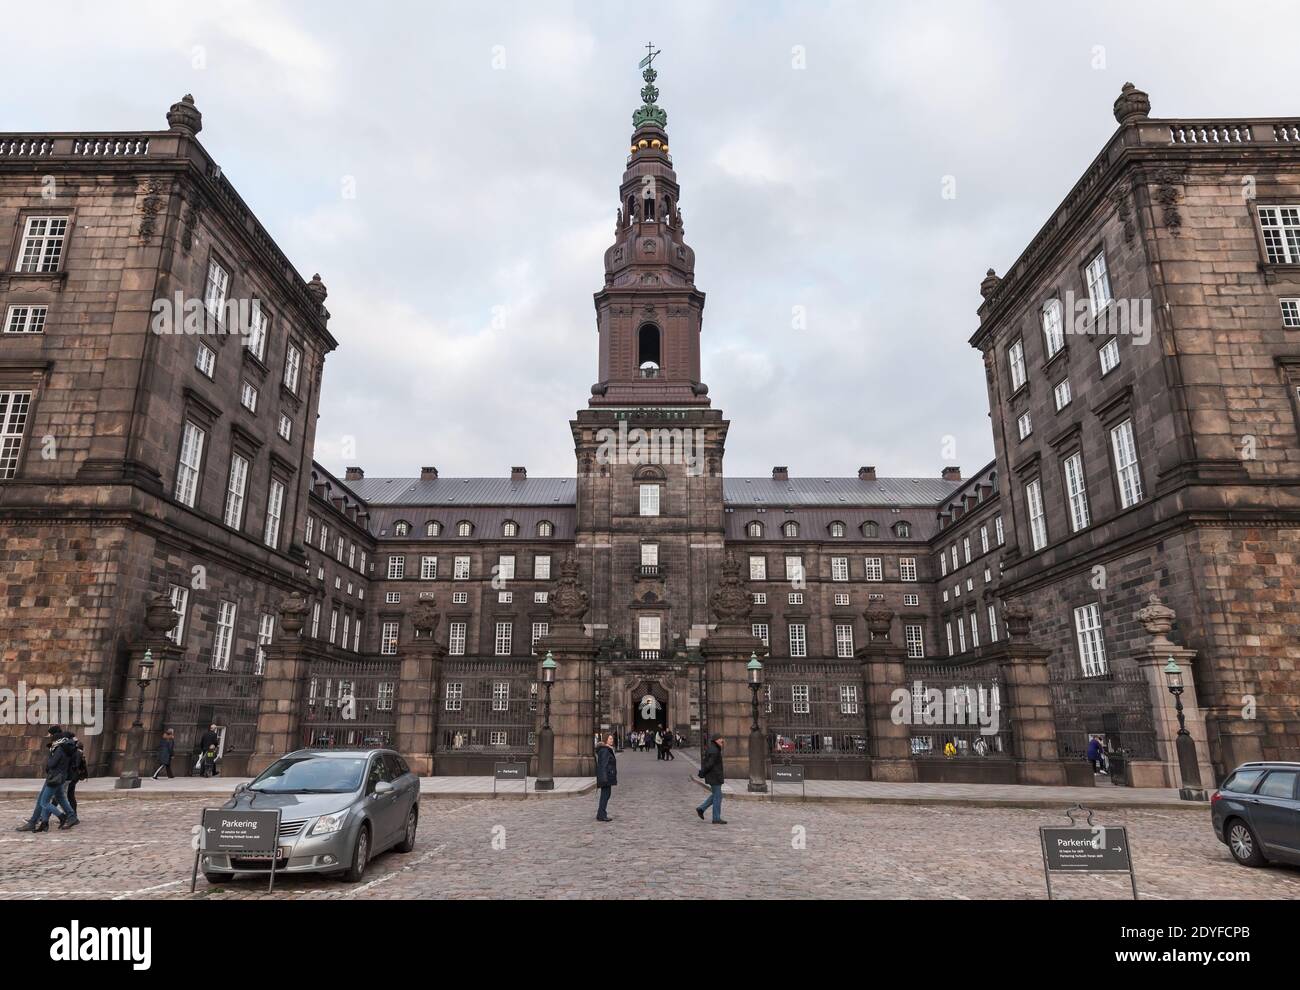 Copenhague, Danemark - 10 décembre 2017 : les touristes se trouvent en face du palais de Christiansborg, un palais et un bâtiment du gouvernement sur l'îlot de Slotsholmen Banque D'Images